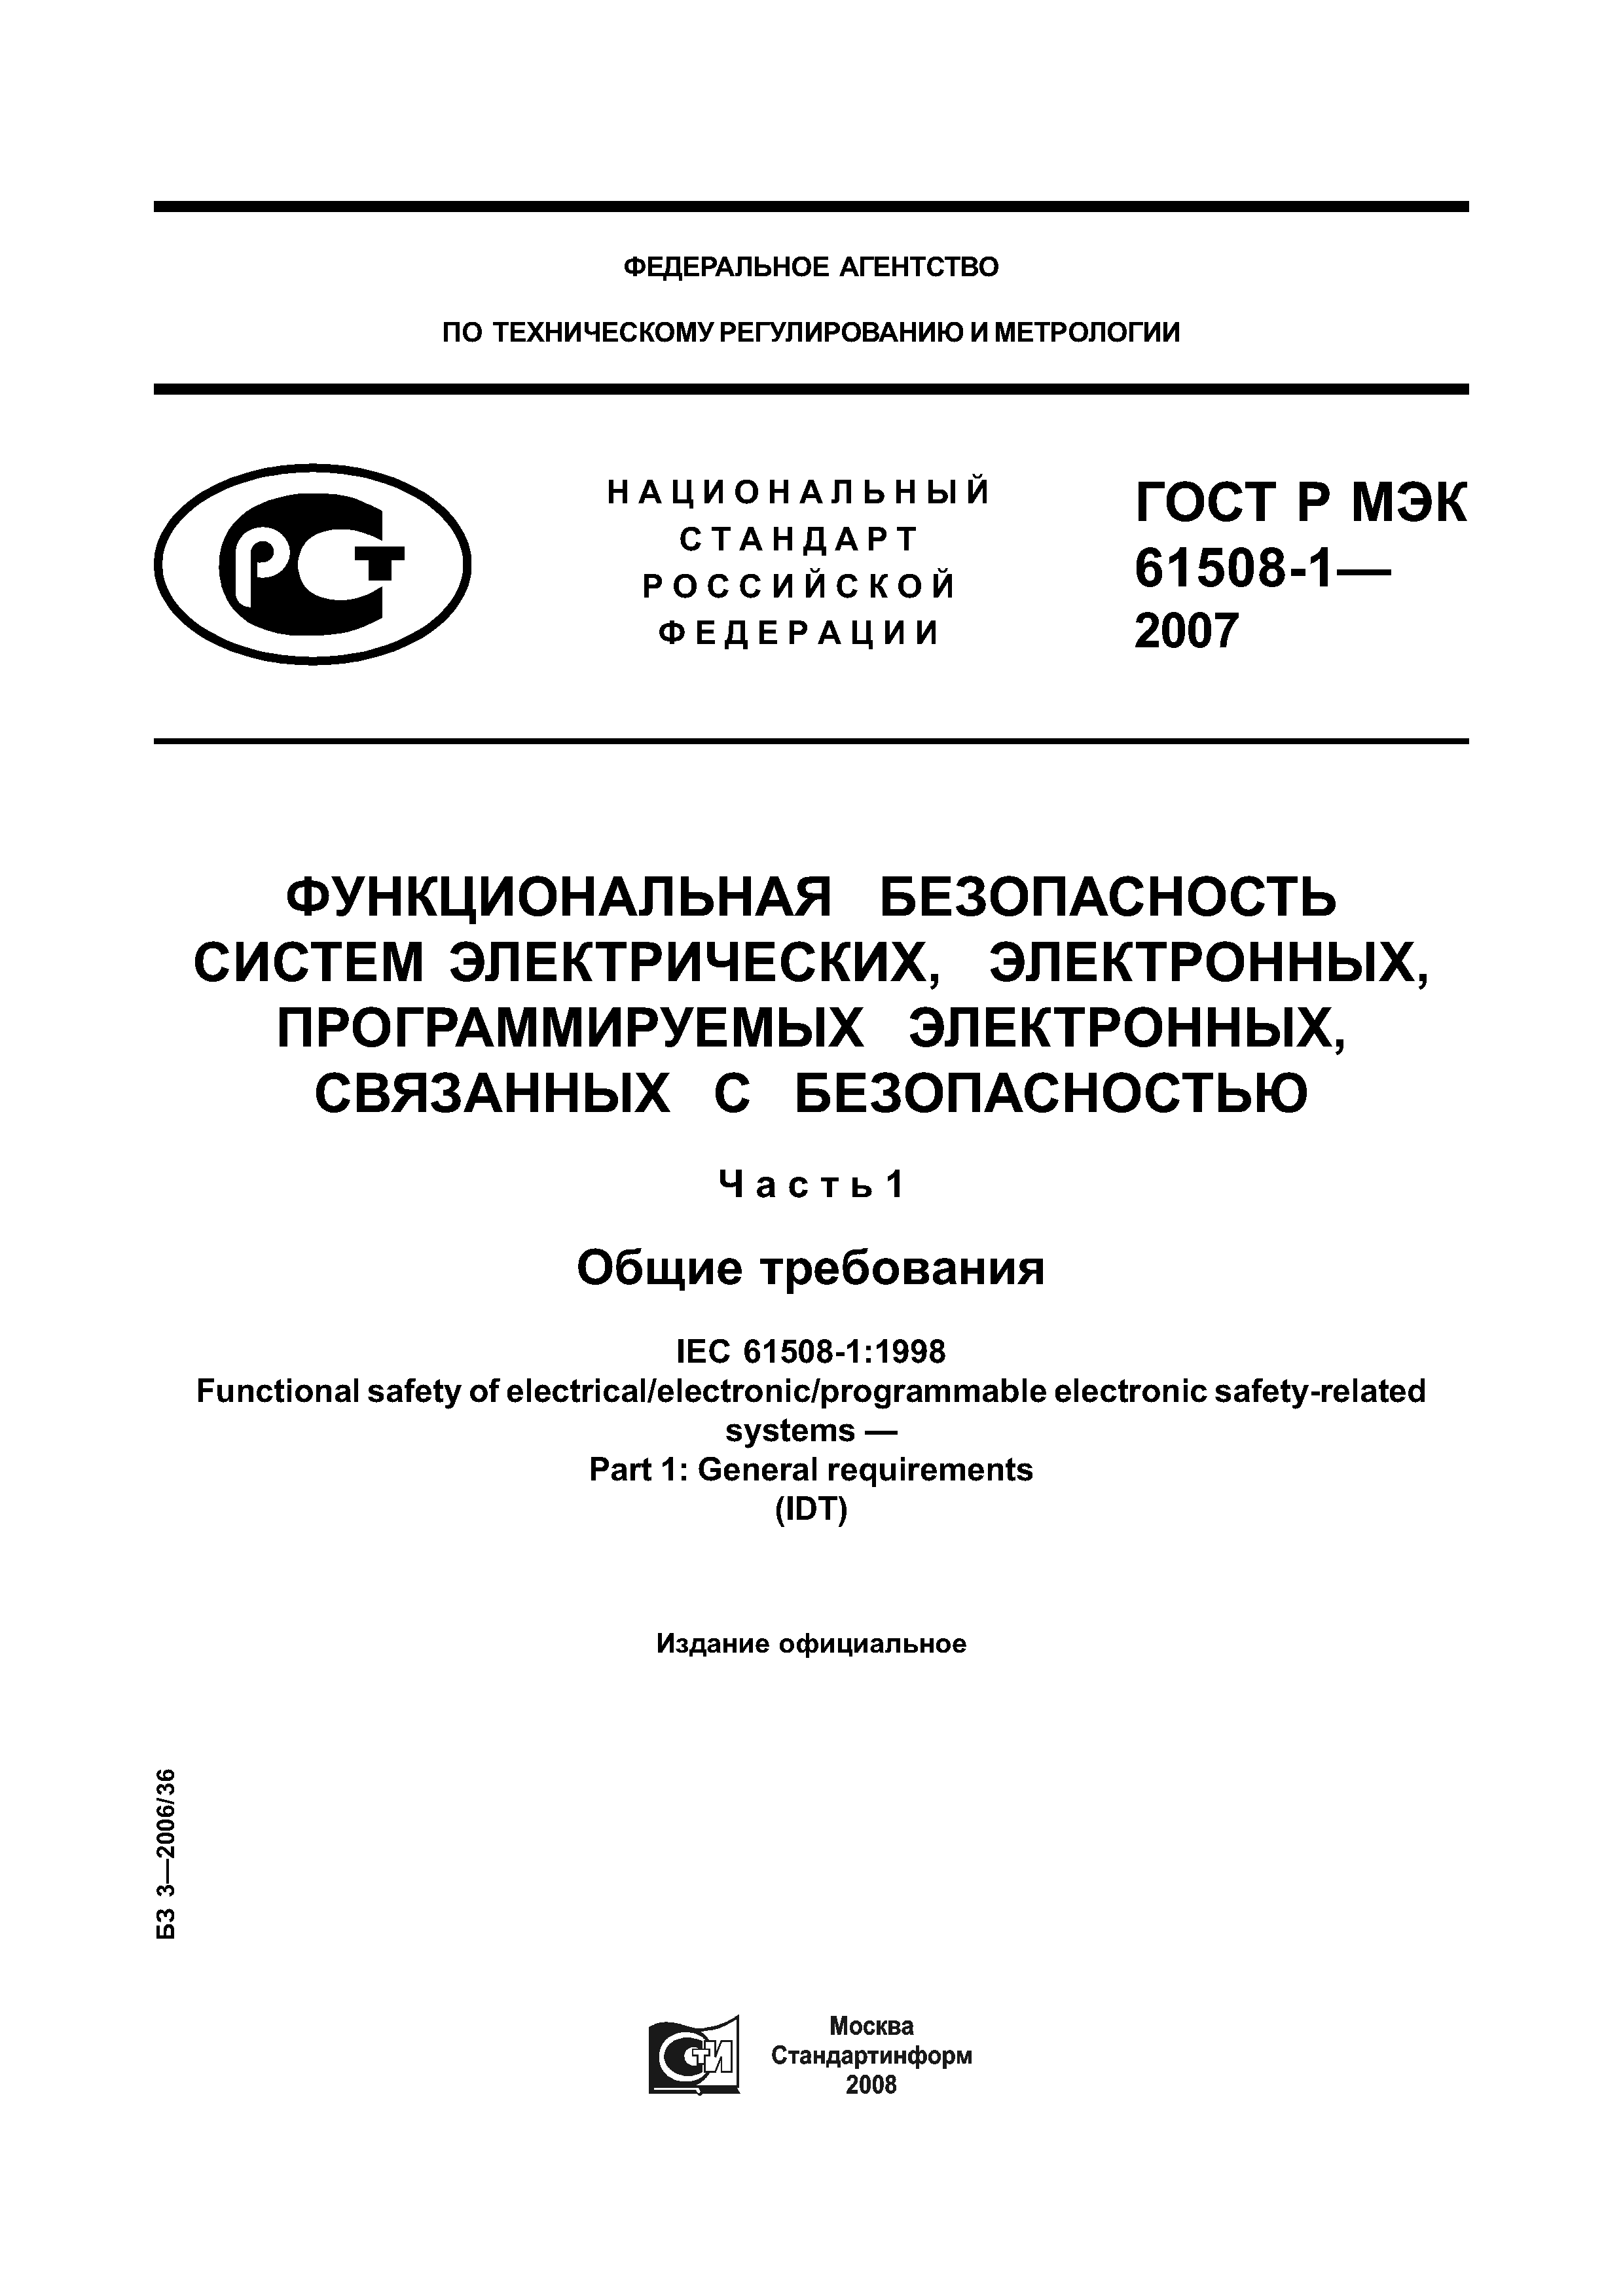 ГОСТ Р МЭК 61508-1-2007